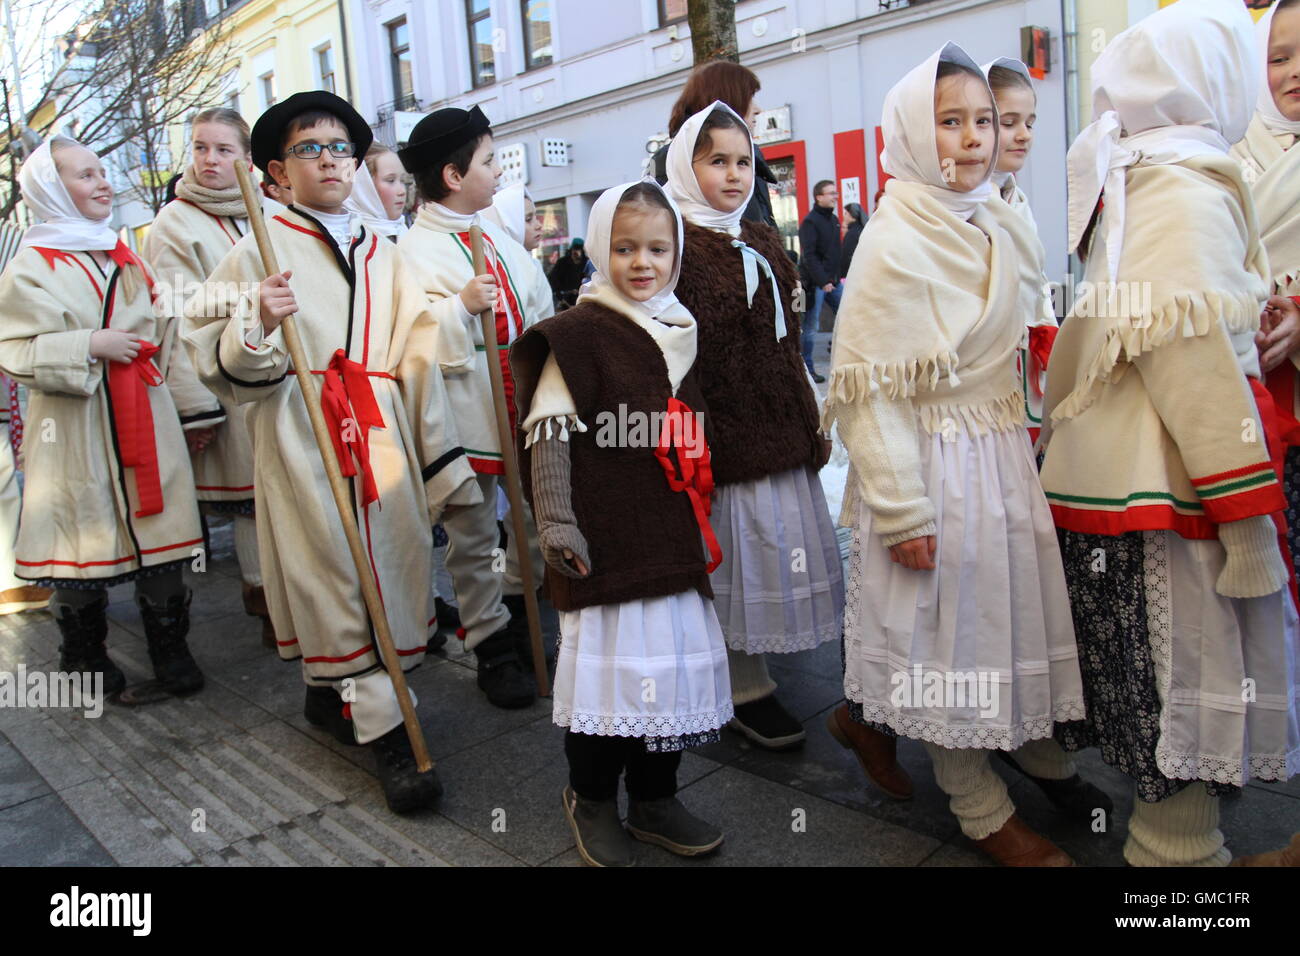 Les enfants bénéficiant d'un festival de l'absolution (Mardi Gras) qui marque le début de 40 jours de jeûne (Mercredi des Cendres) en Slovaquie Banque D'Images